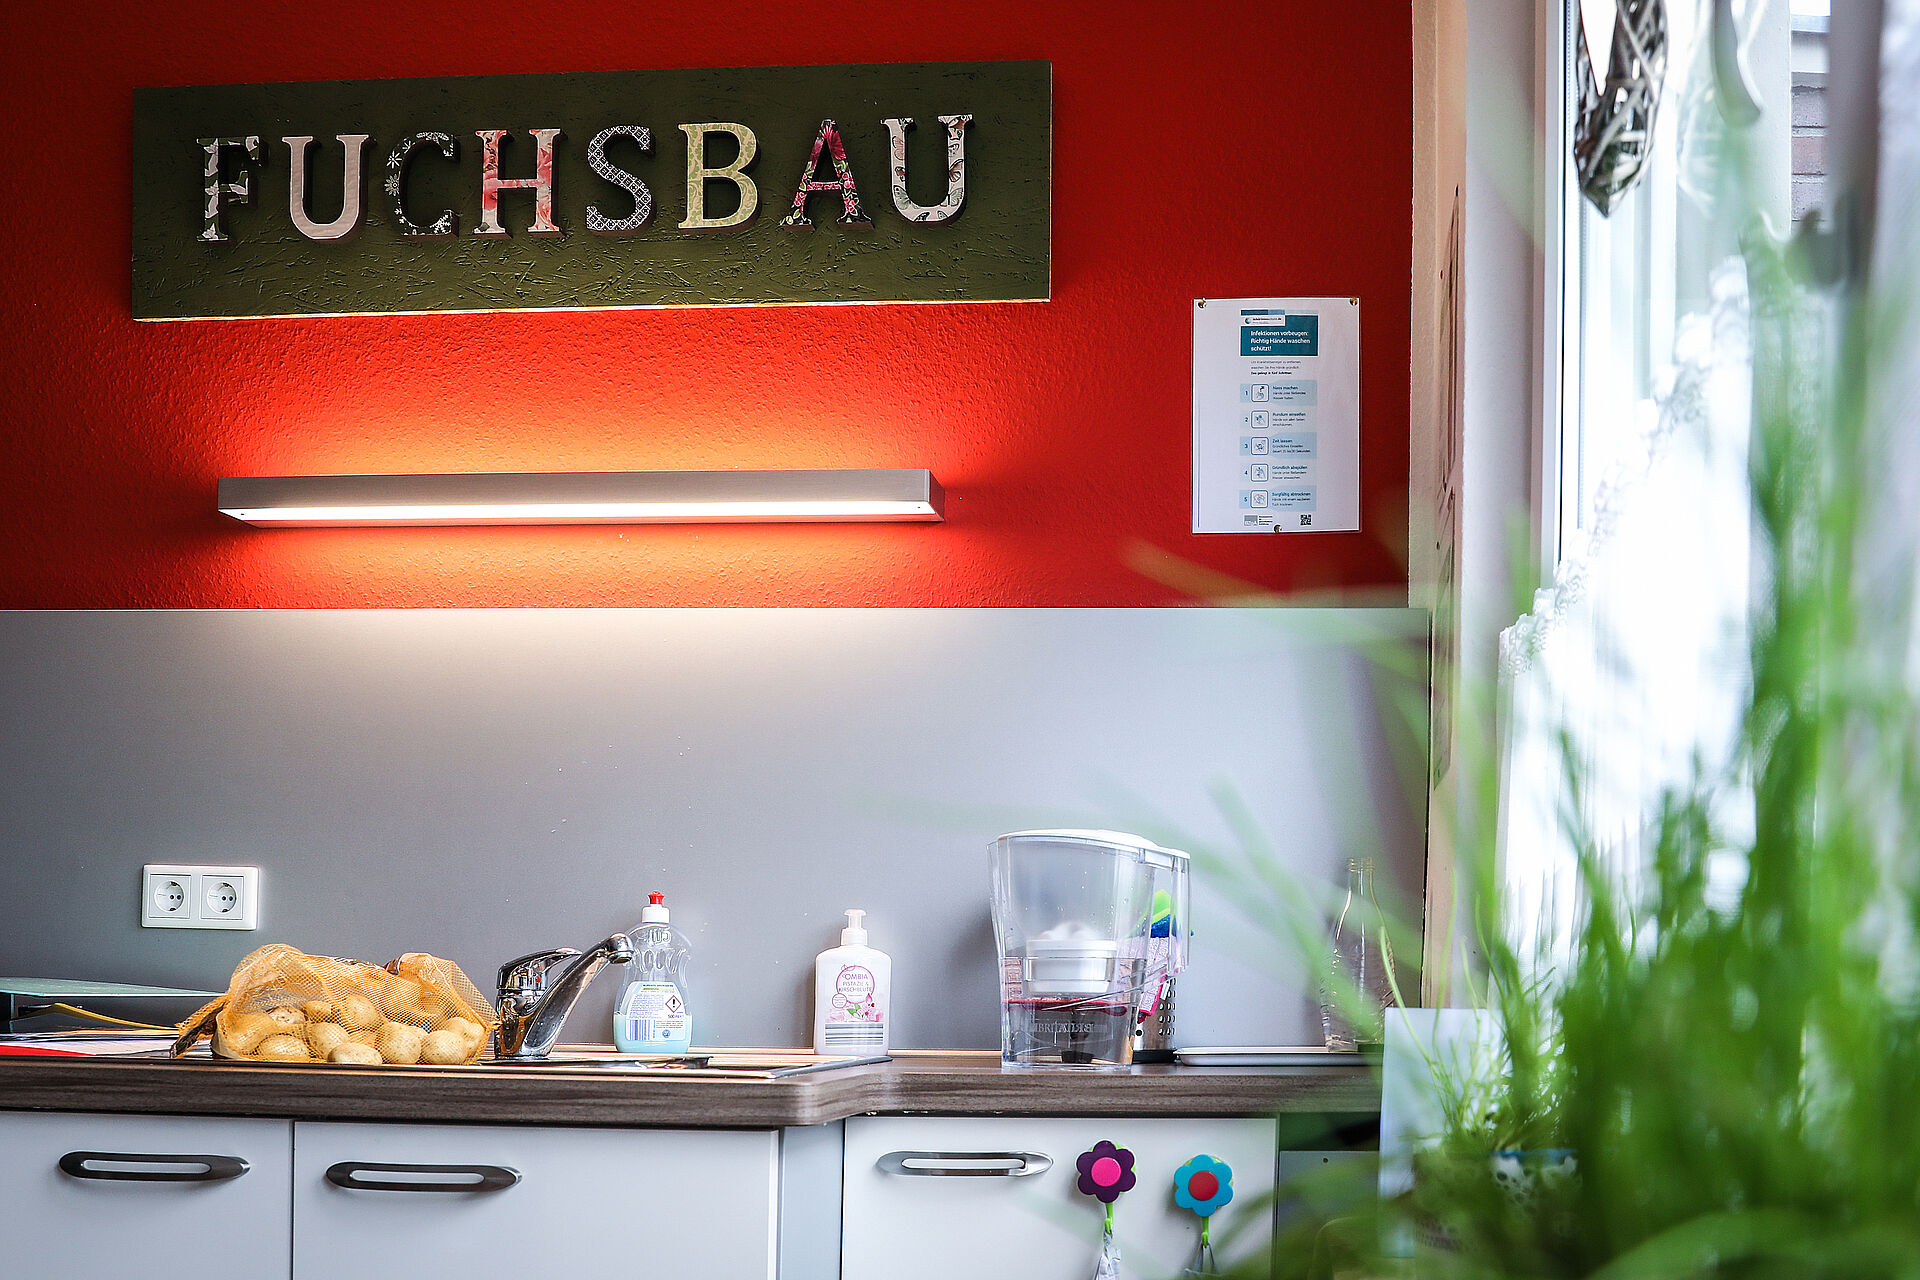 Der Schriftzug "Fuchsbau" an der Wand in der Küche der Wohngruppe "Füchse".